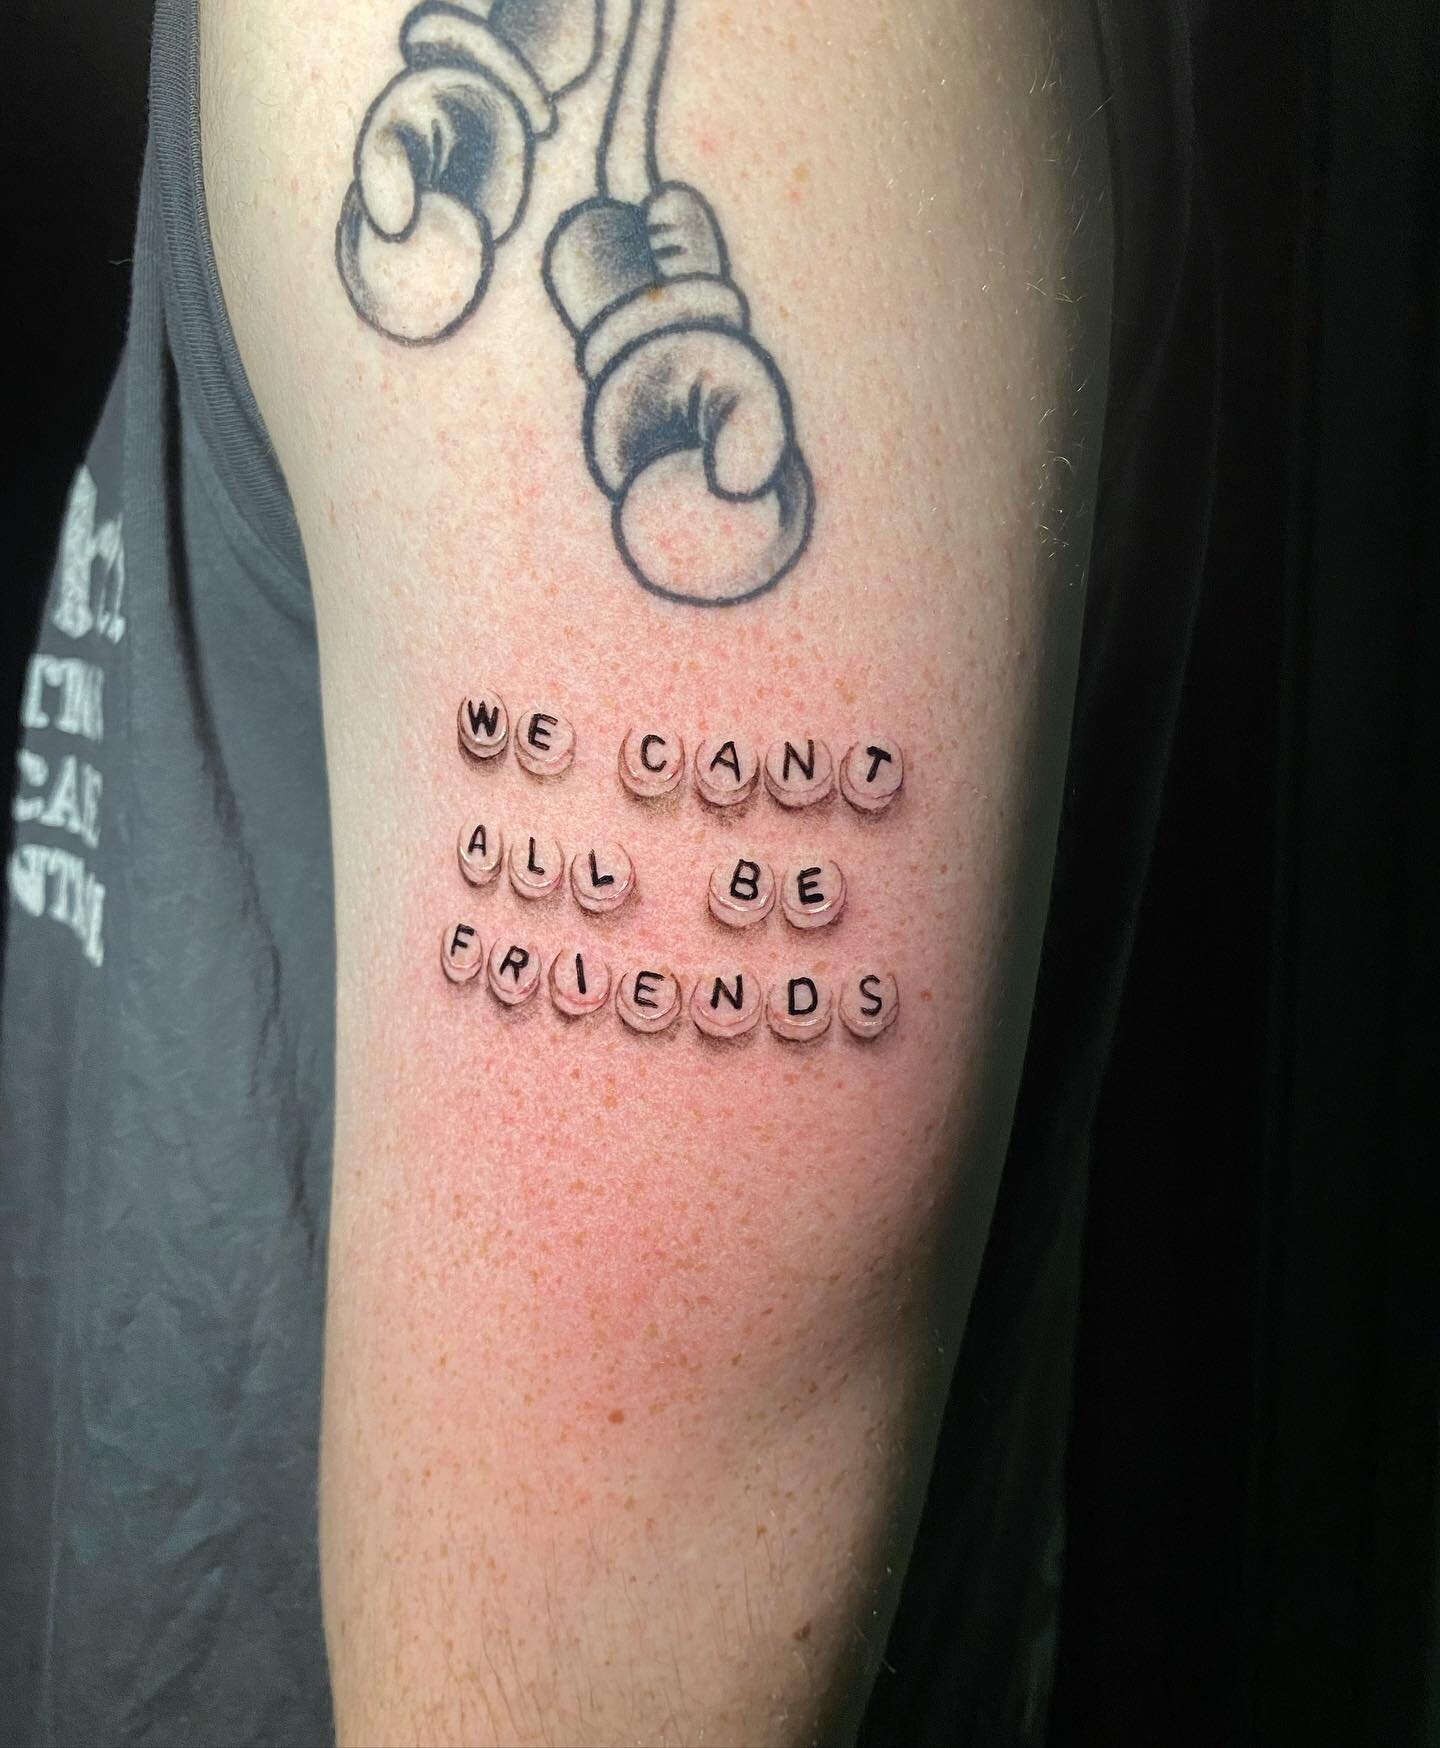 Friendship bracelet bead tattoo ✌️

#tattoo #tattooshop #friendship #Massachusetts #capecod #qttr #newengland #ink